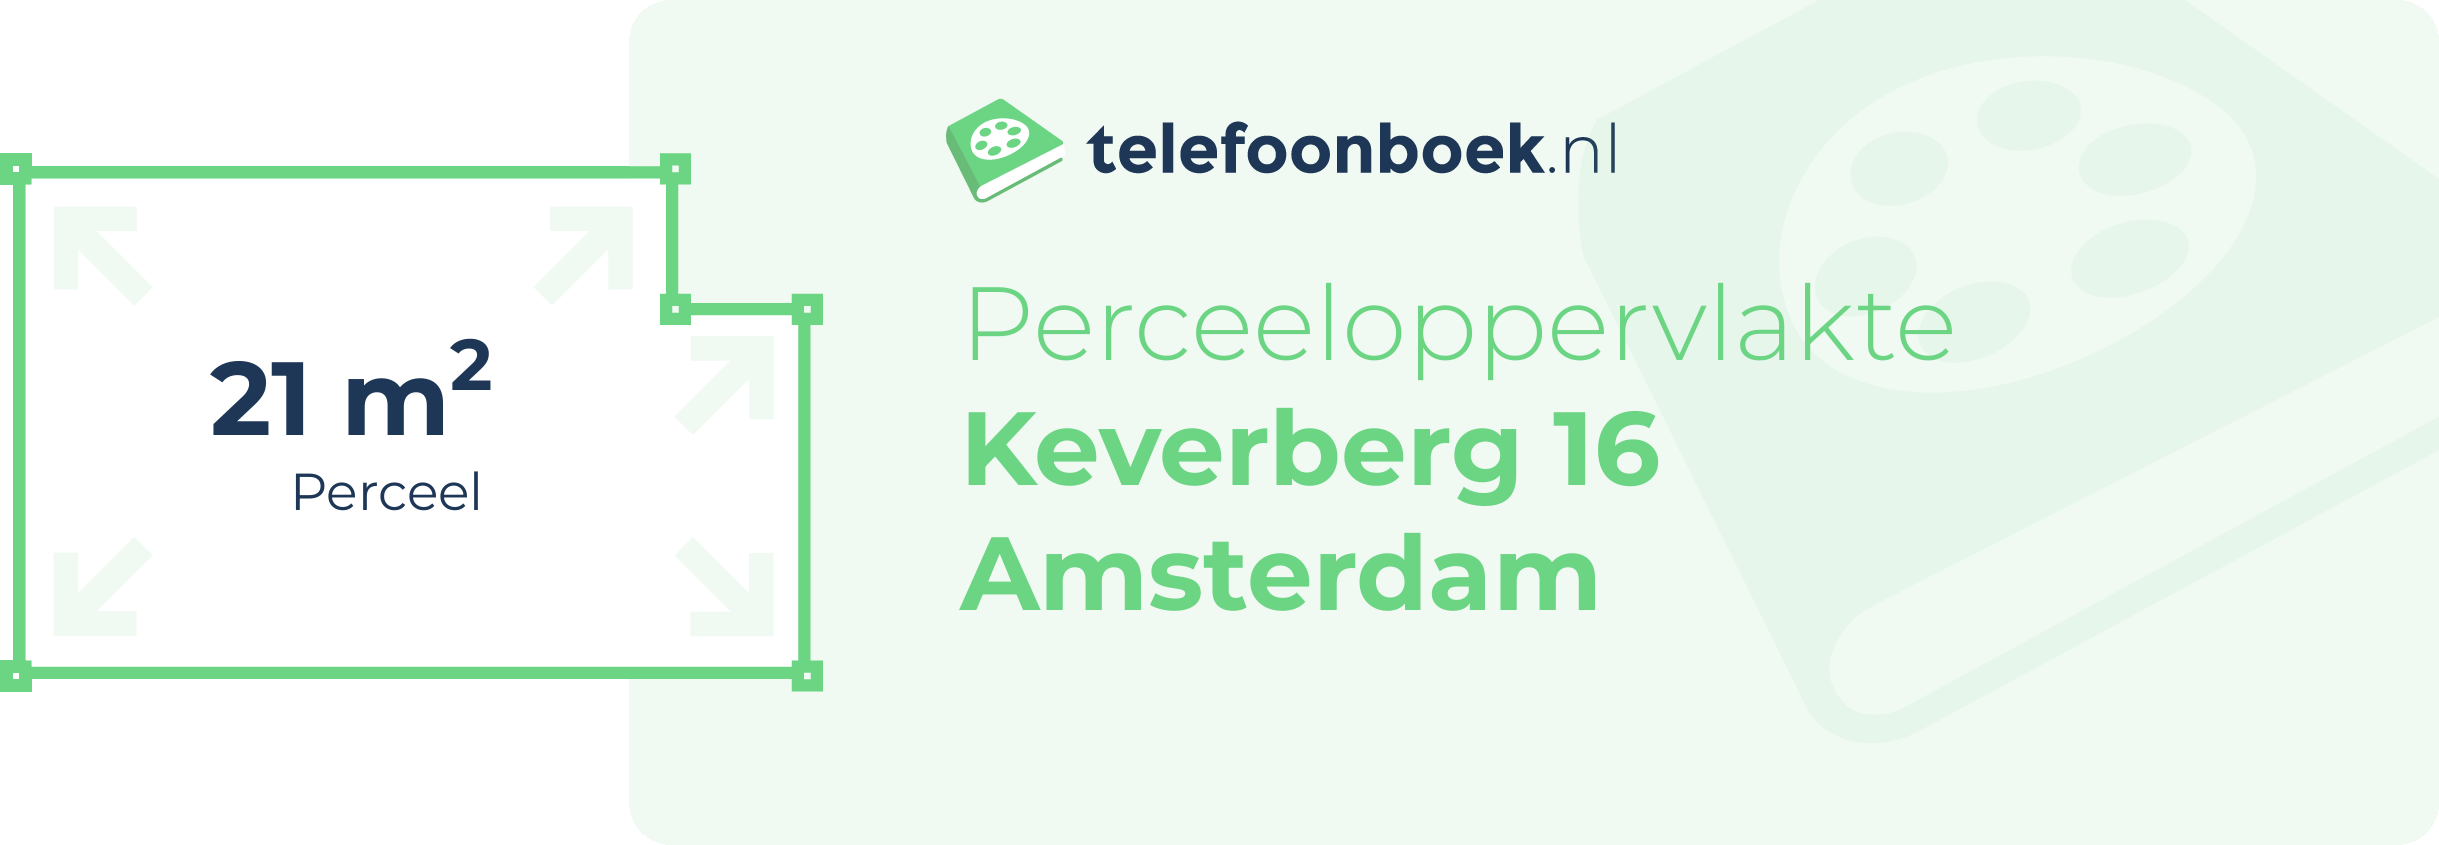 Perceeloppervlakte Keverberg 16 Amsterdam